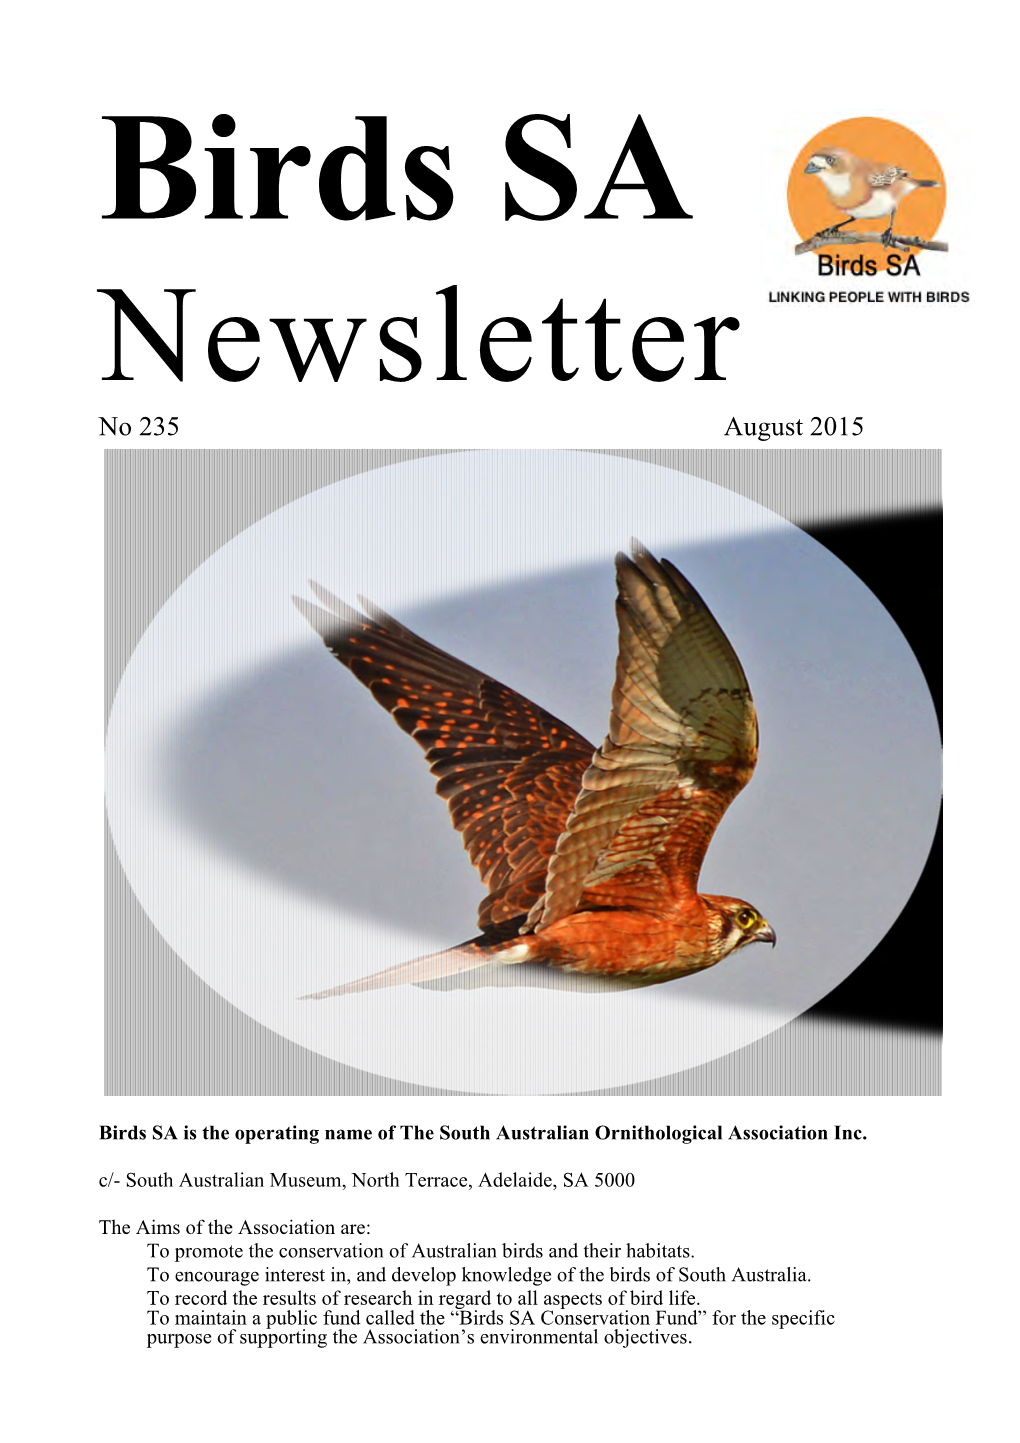 Birds SA Newsletter No. 235, August 2015